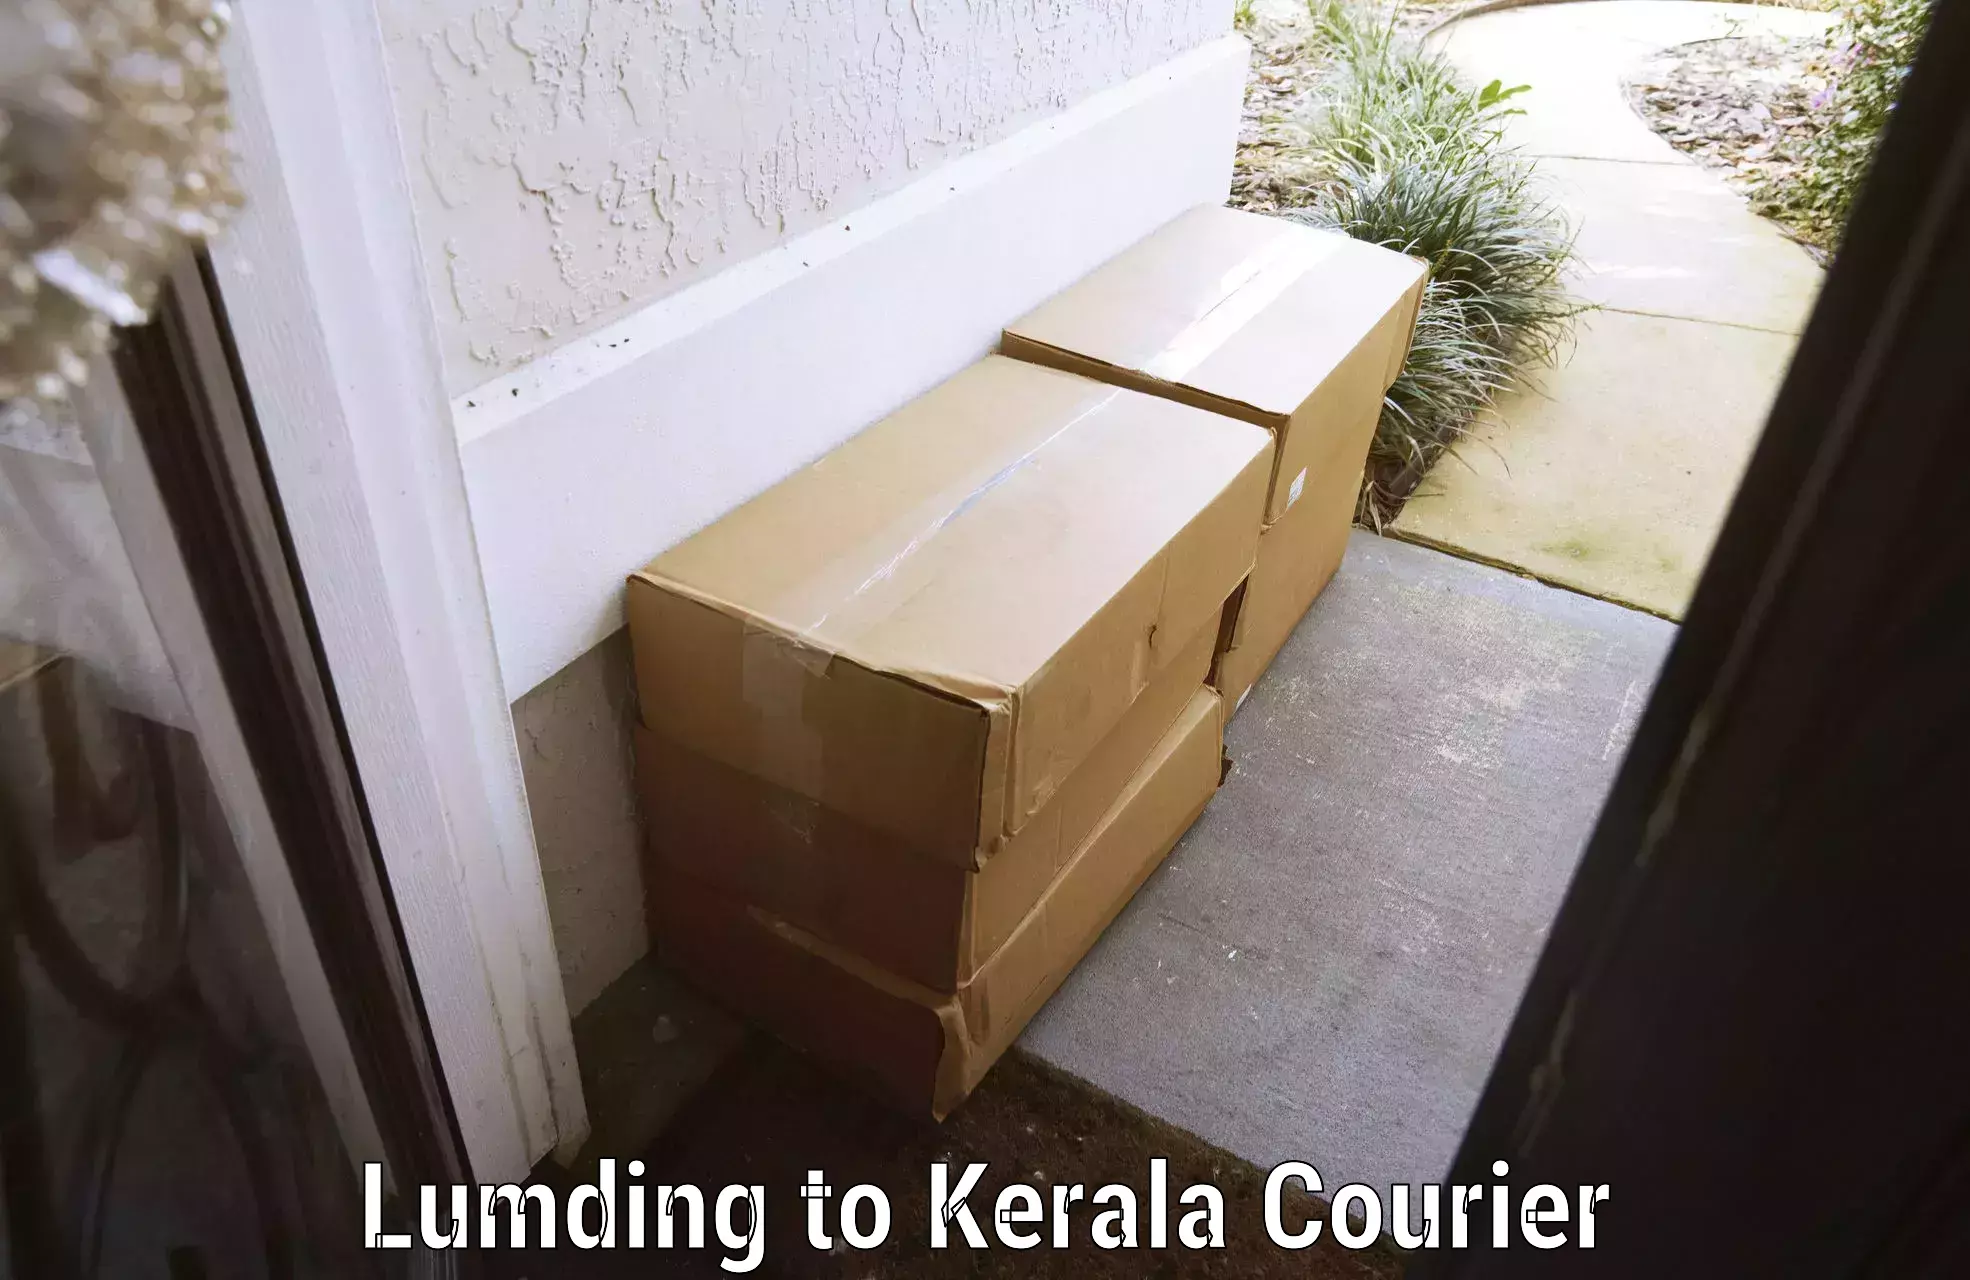 Luggage transit service Lumding to Kerala